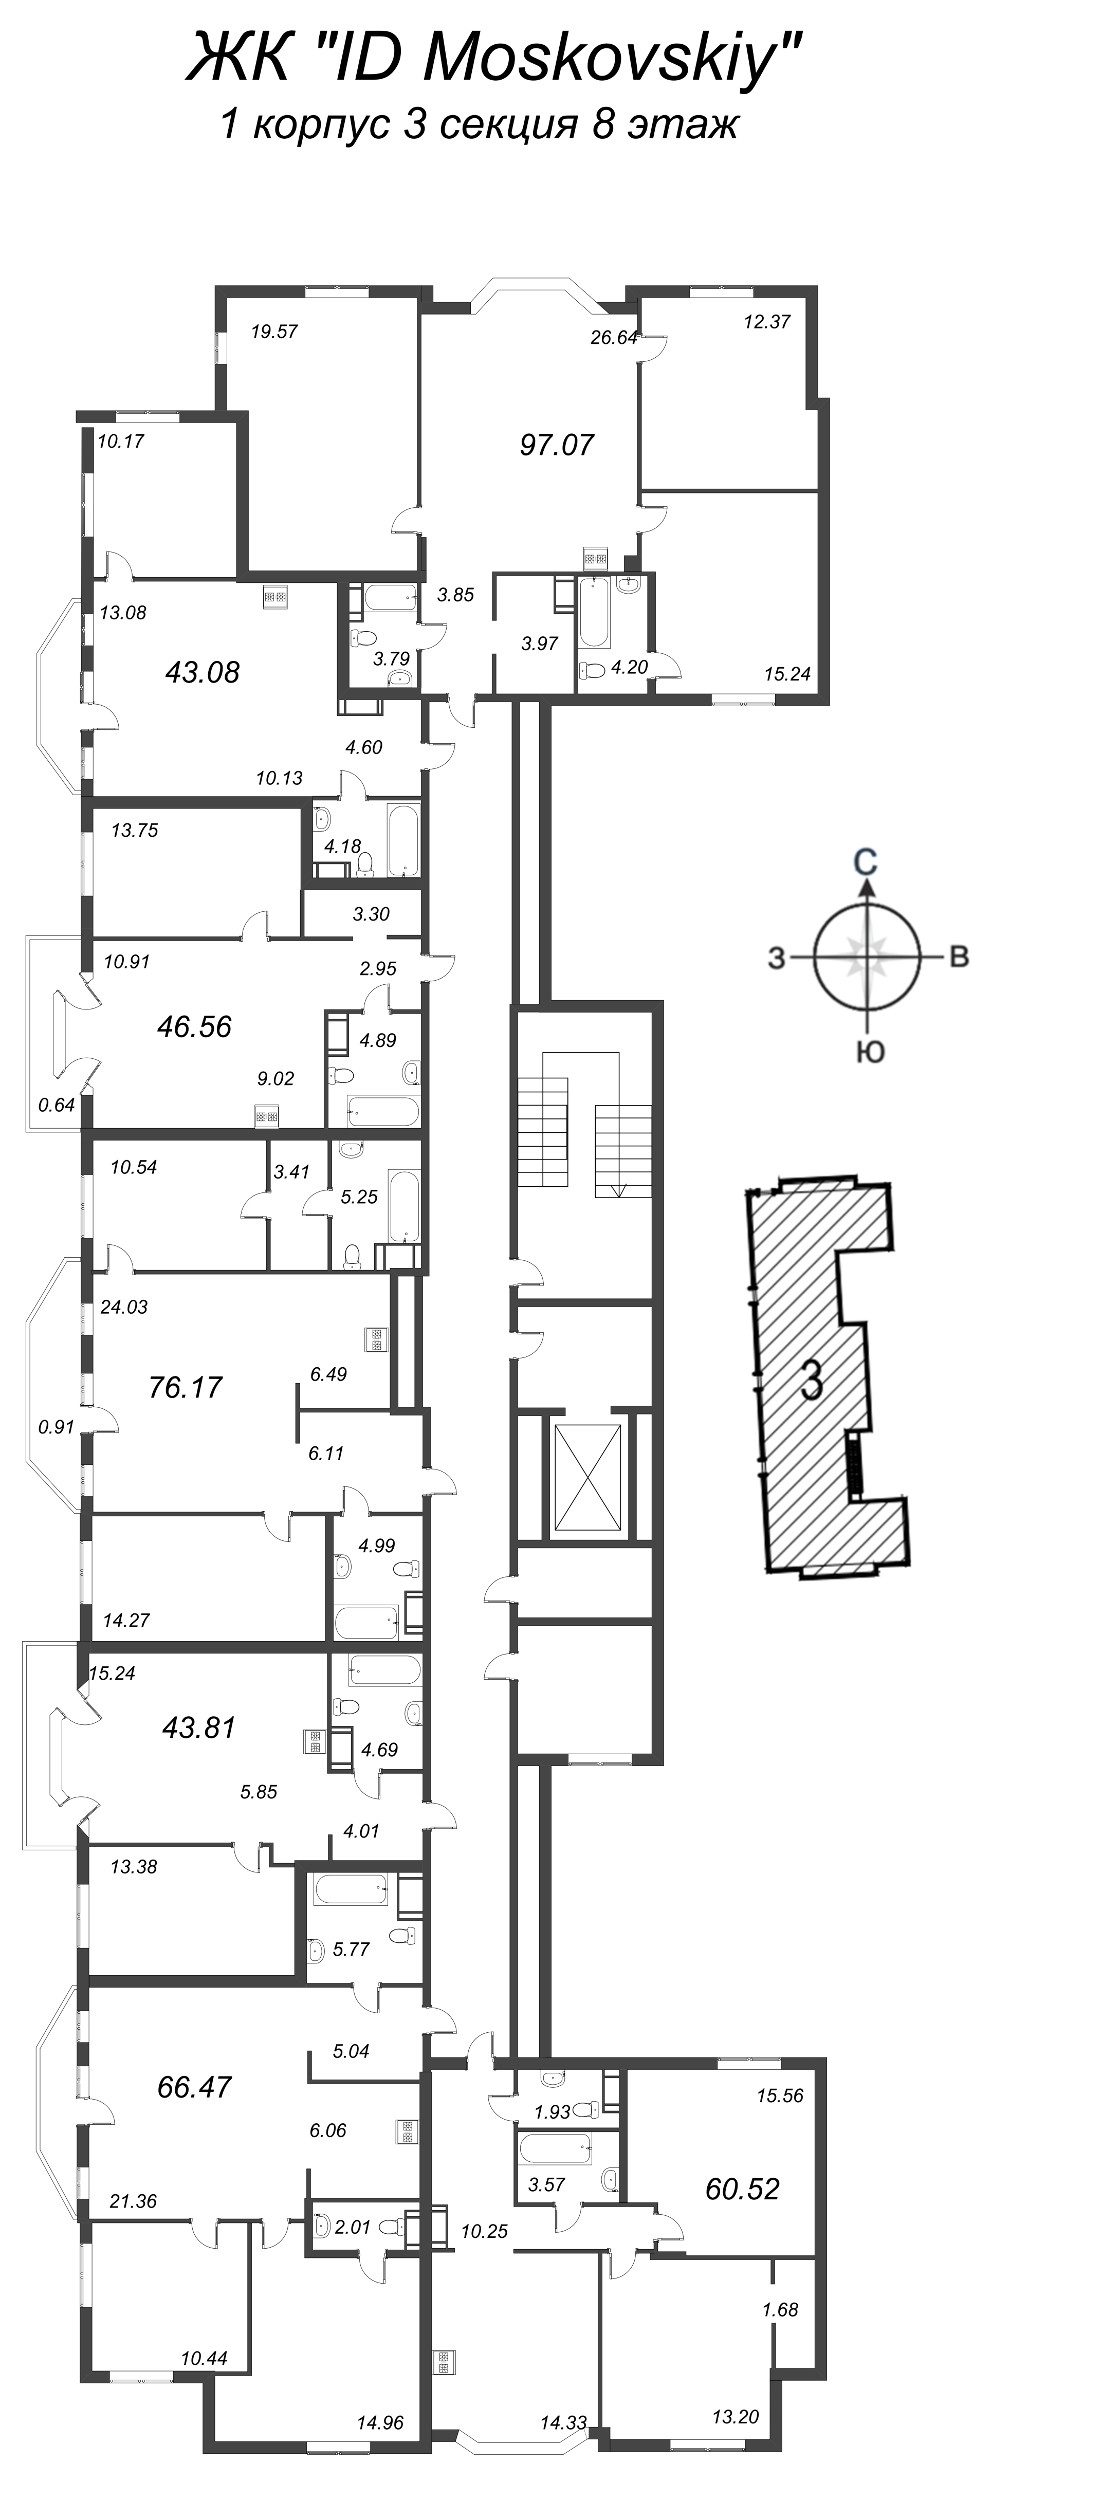 4-комнатная (Евро) квартира, 89.63 м² в ЖК "ID Moskovskiy" - планировка этажа